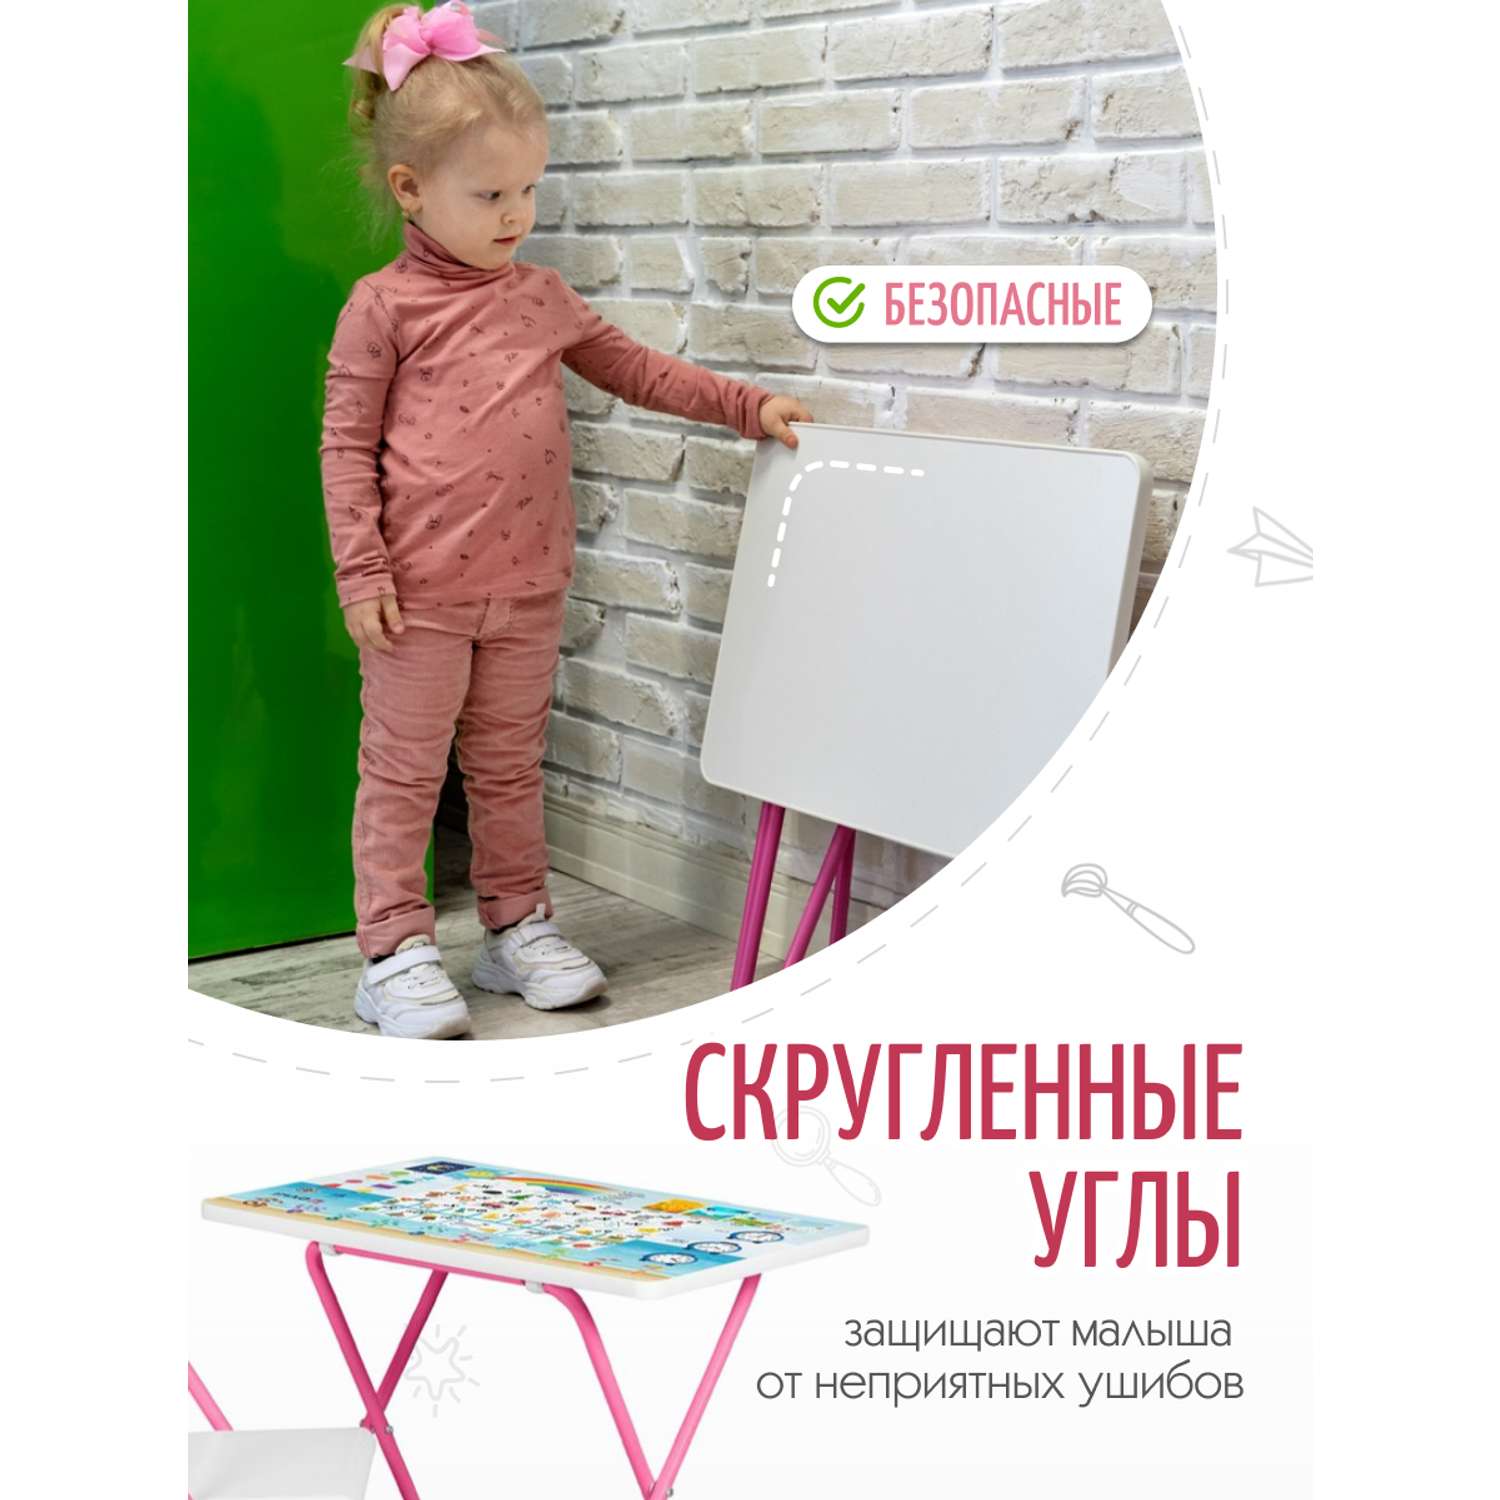 Детская складная мебель ДЭМИ набор №3-02 азбука/розовый - фото 5